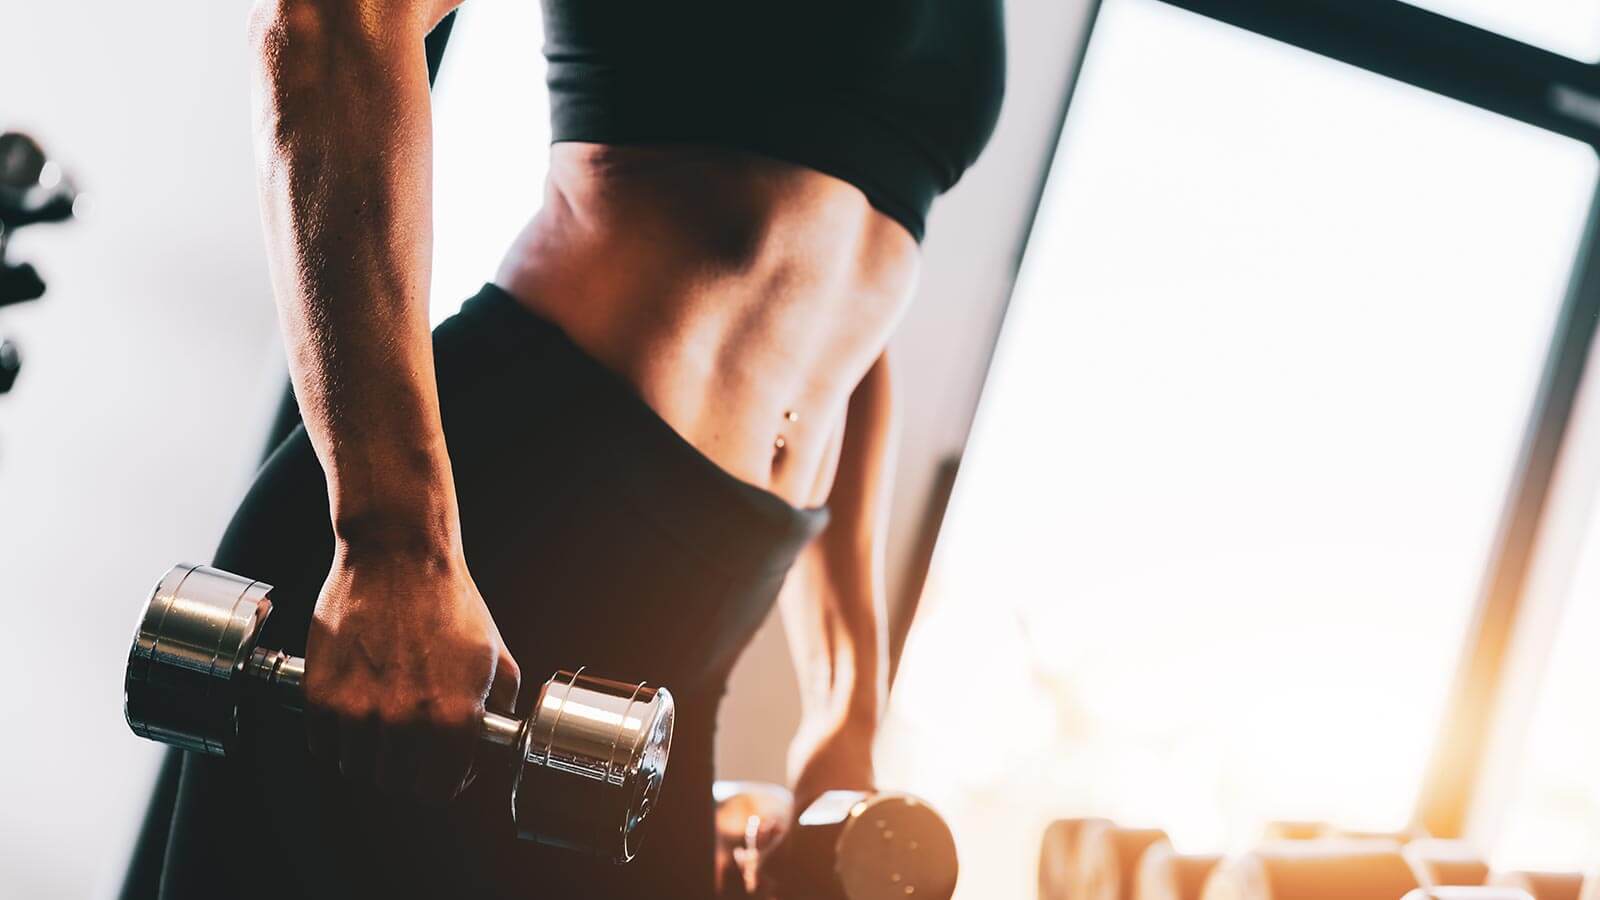 La musculation pour les femmes : bon ou pas? - Coaching sportif -  Préparation physique - Fitness - Sport - Diététique